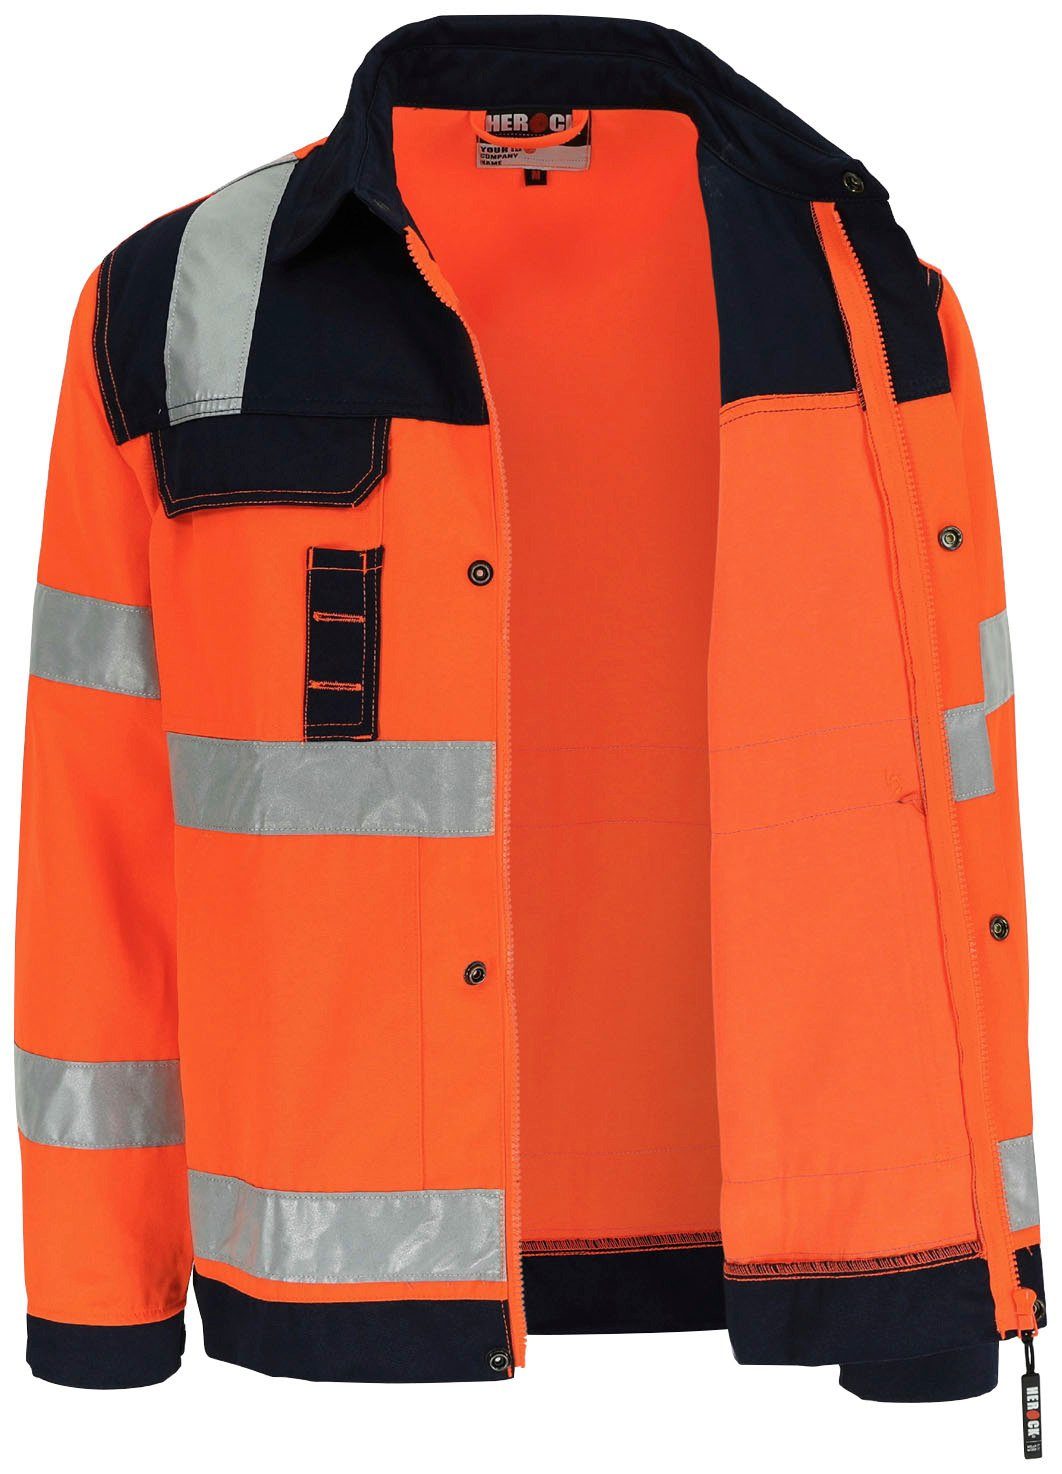 Herock Arbeitsjacke Hydros Bänder 5 Hochwertig, orange Jacke eintellbare Taschen, reflektierende 5cm Hochsichtbar Bündchen